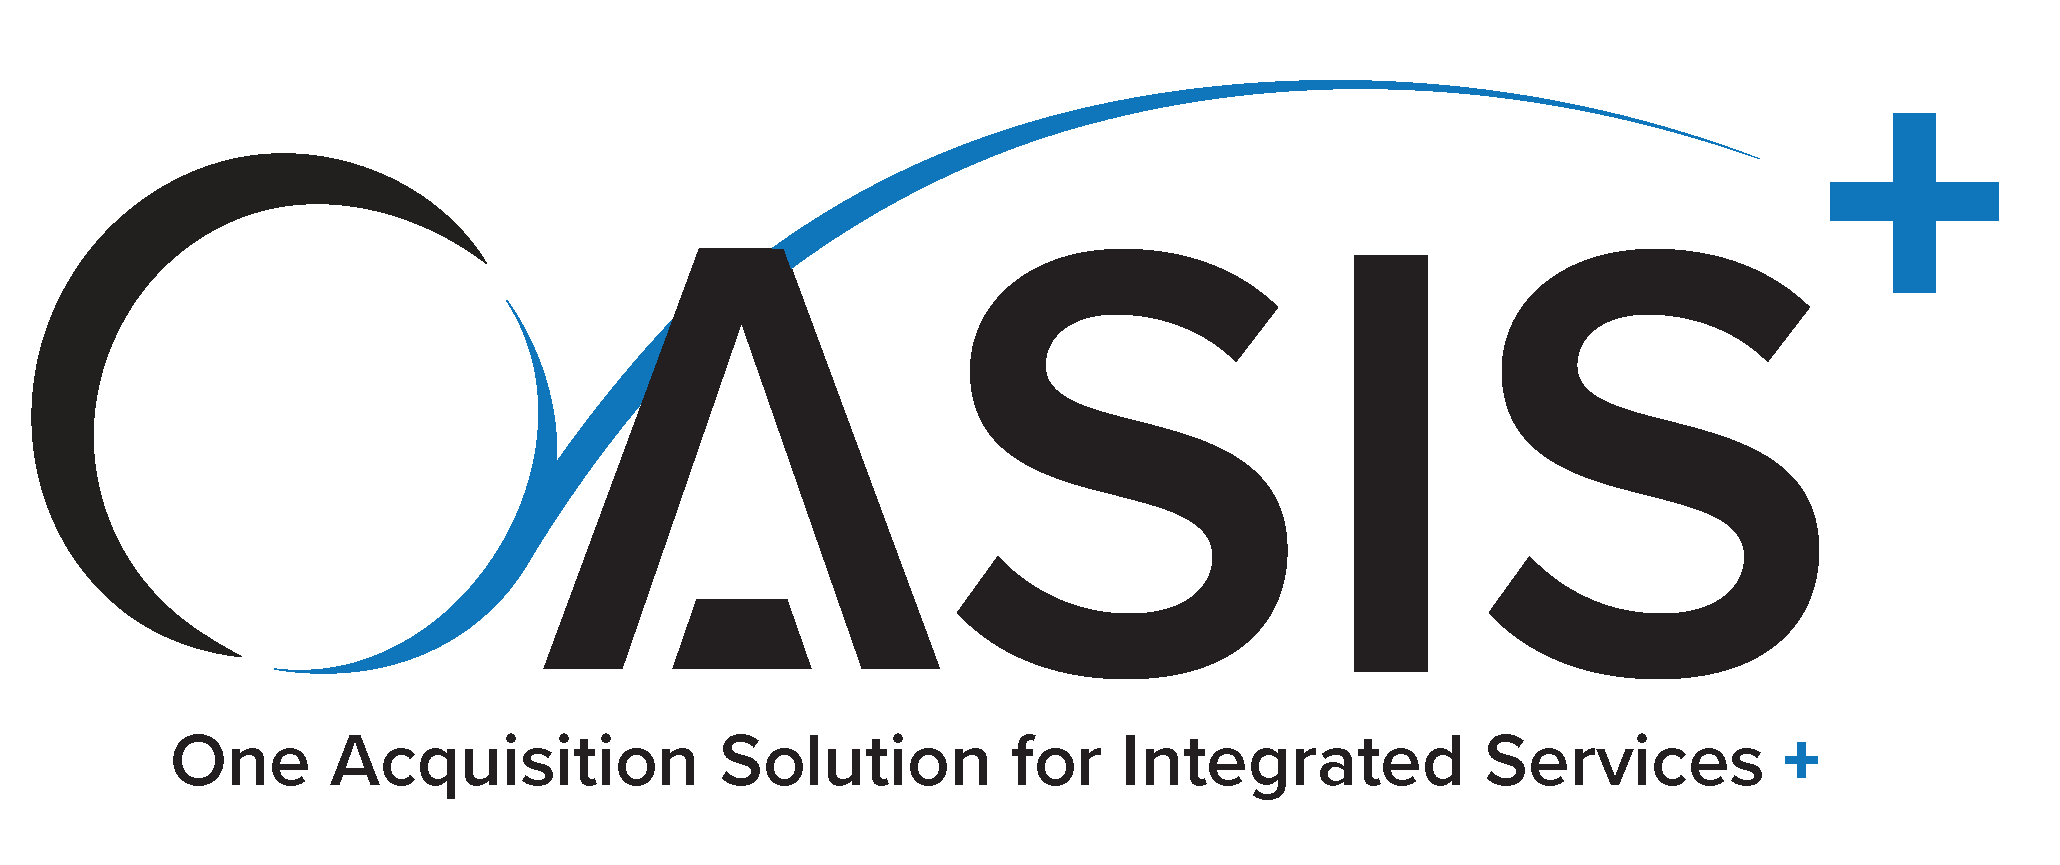 OASIS Plus Logo